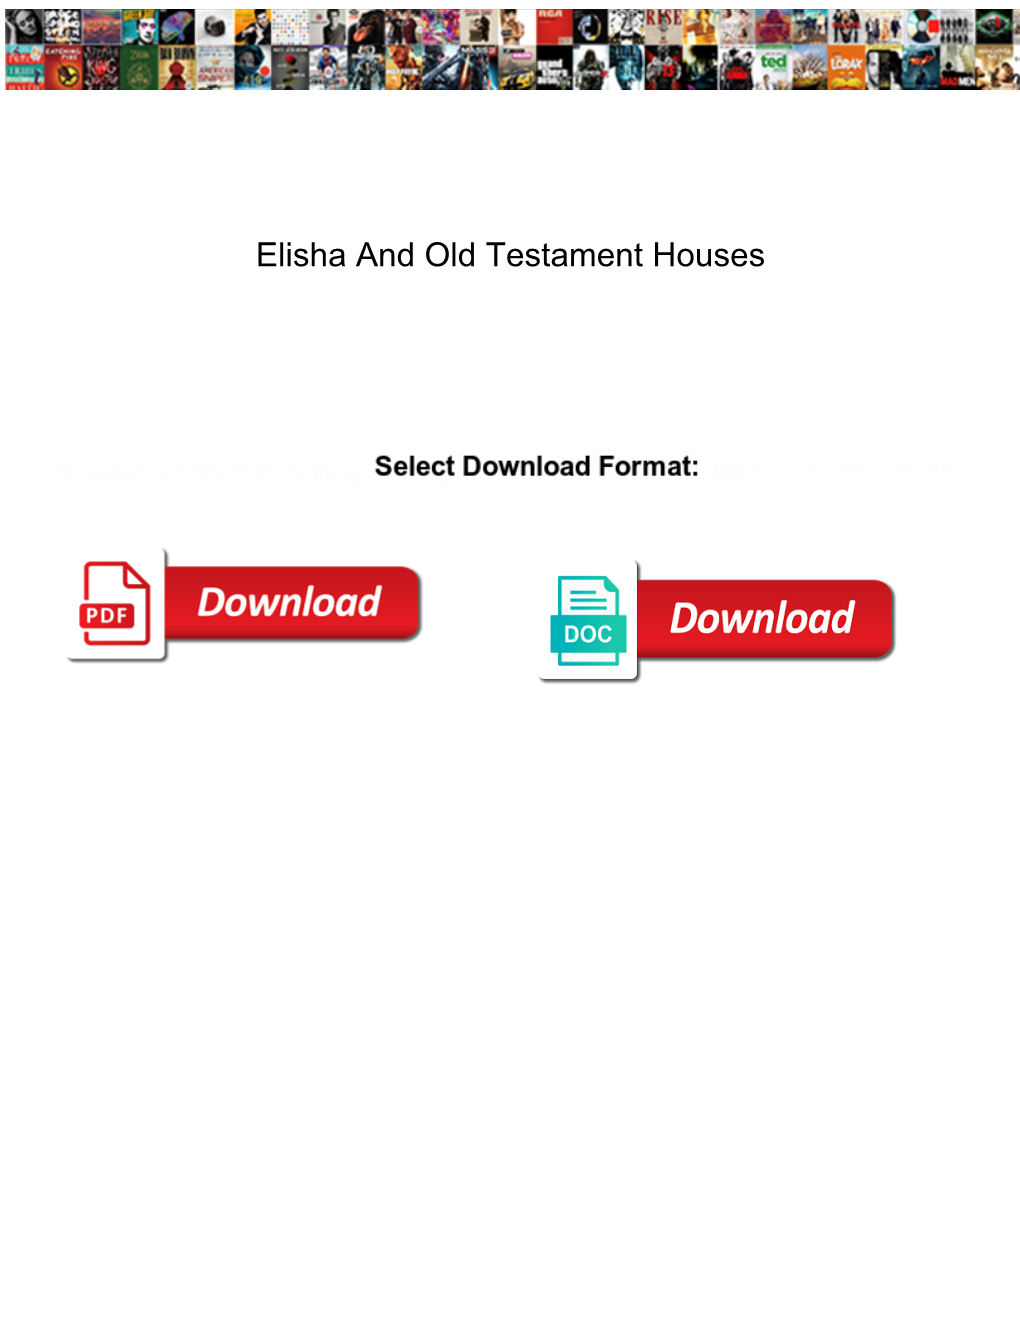 Elisha and Old Testament Houses